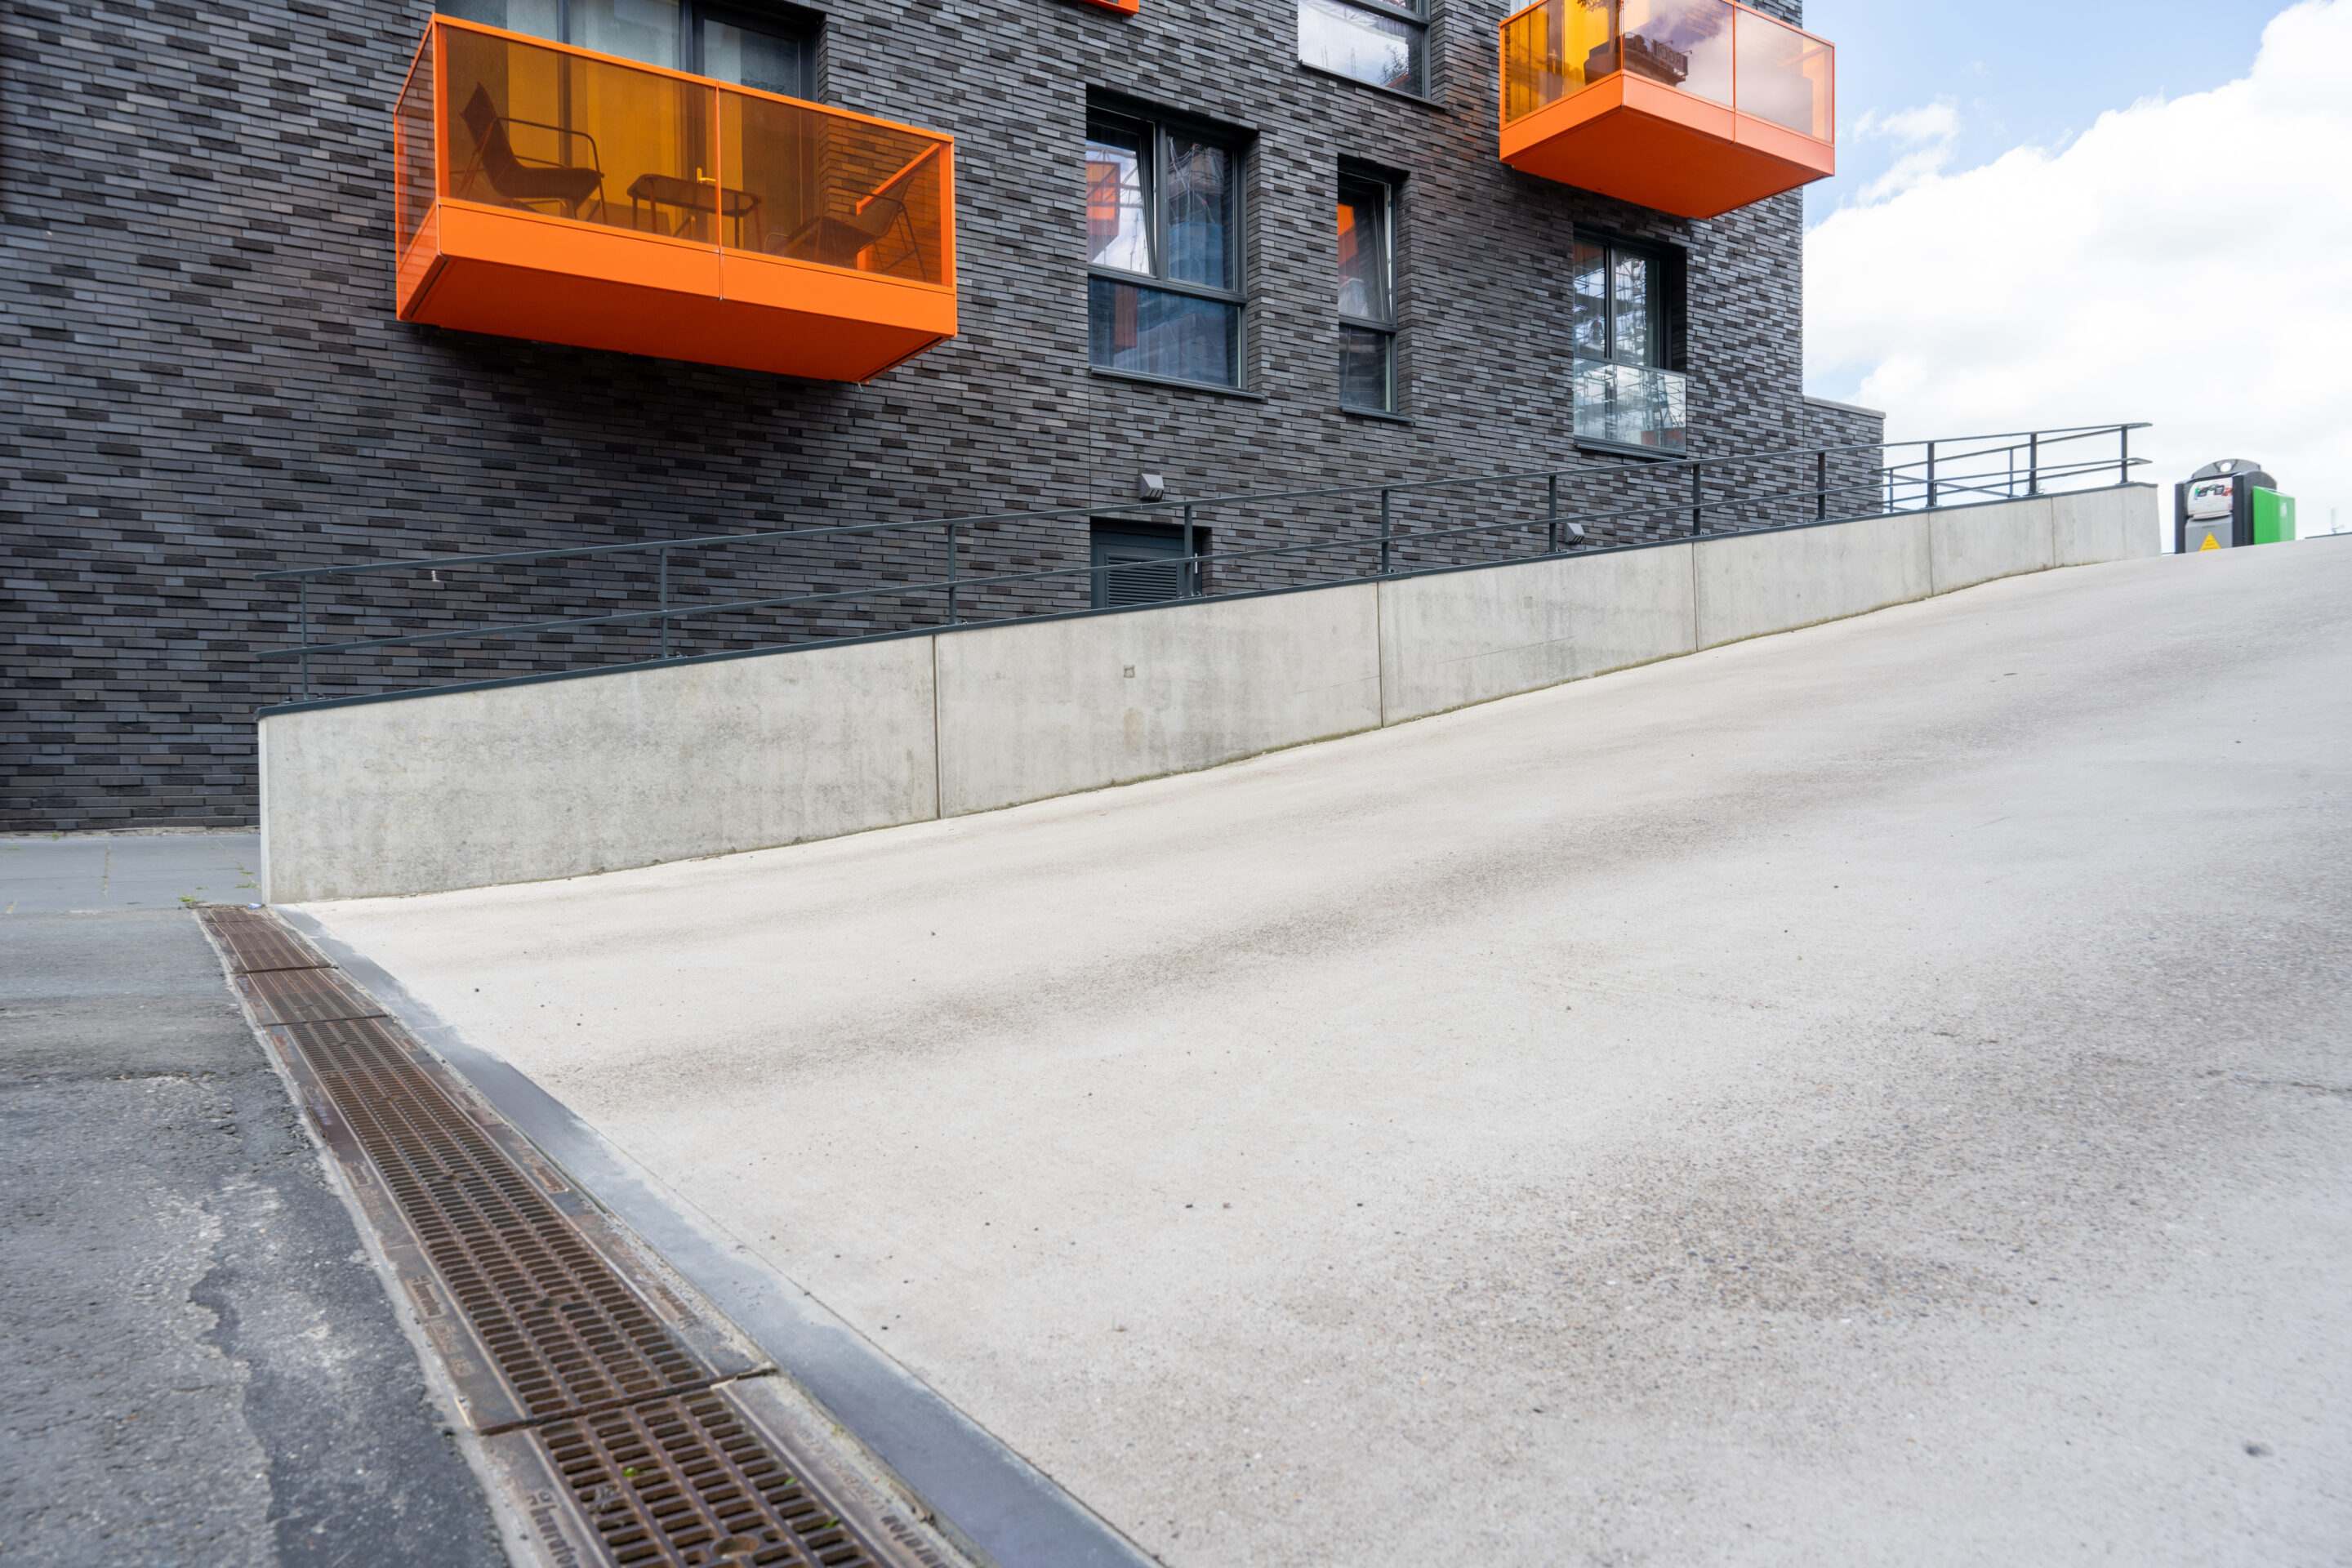 Bosch Beton - Het Kolenpark in Groningen krijgt hellingbaan van keerwanden